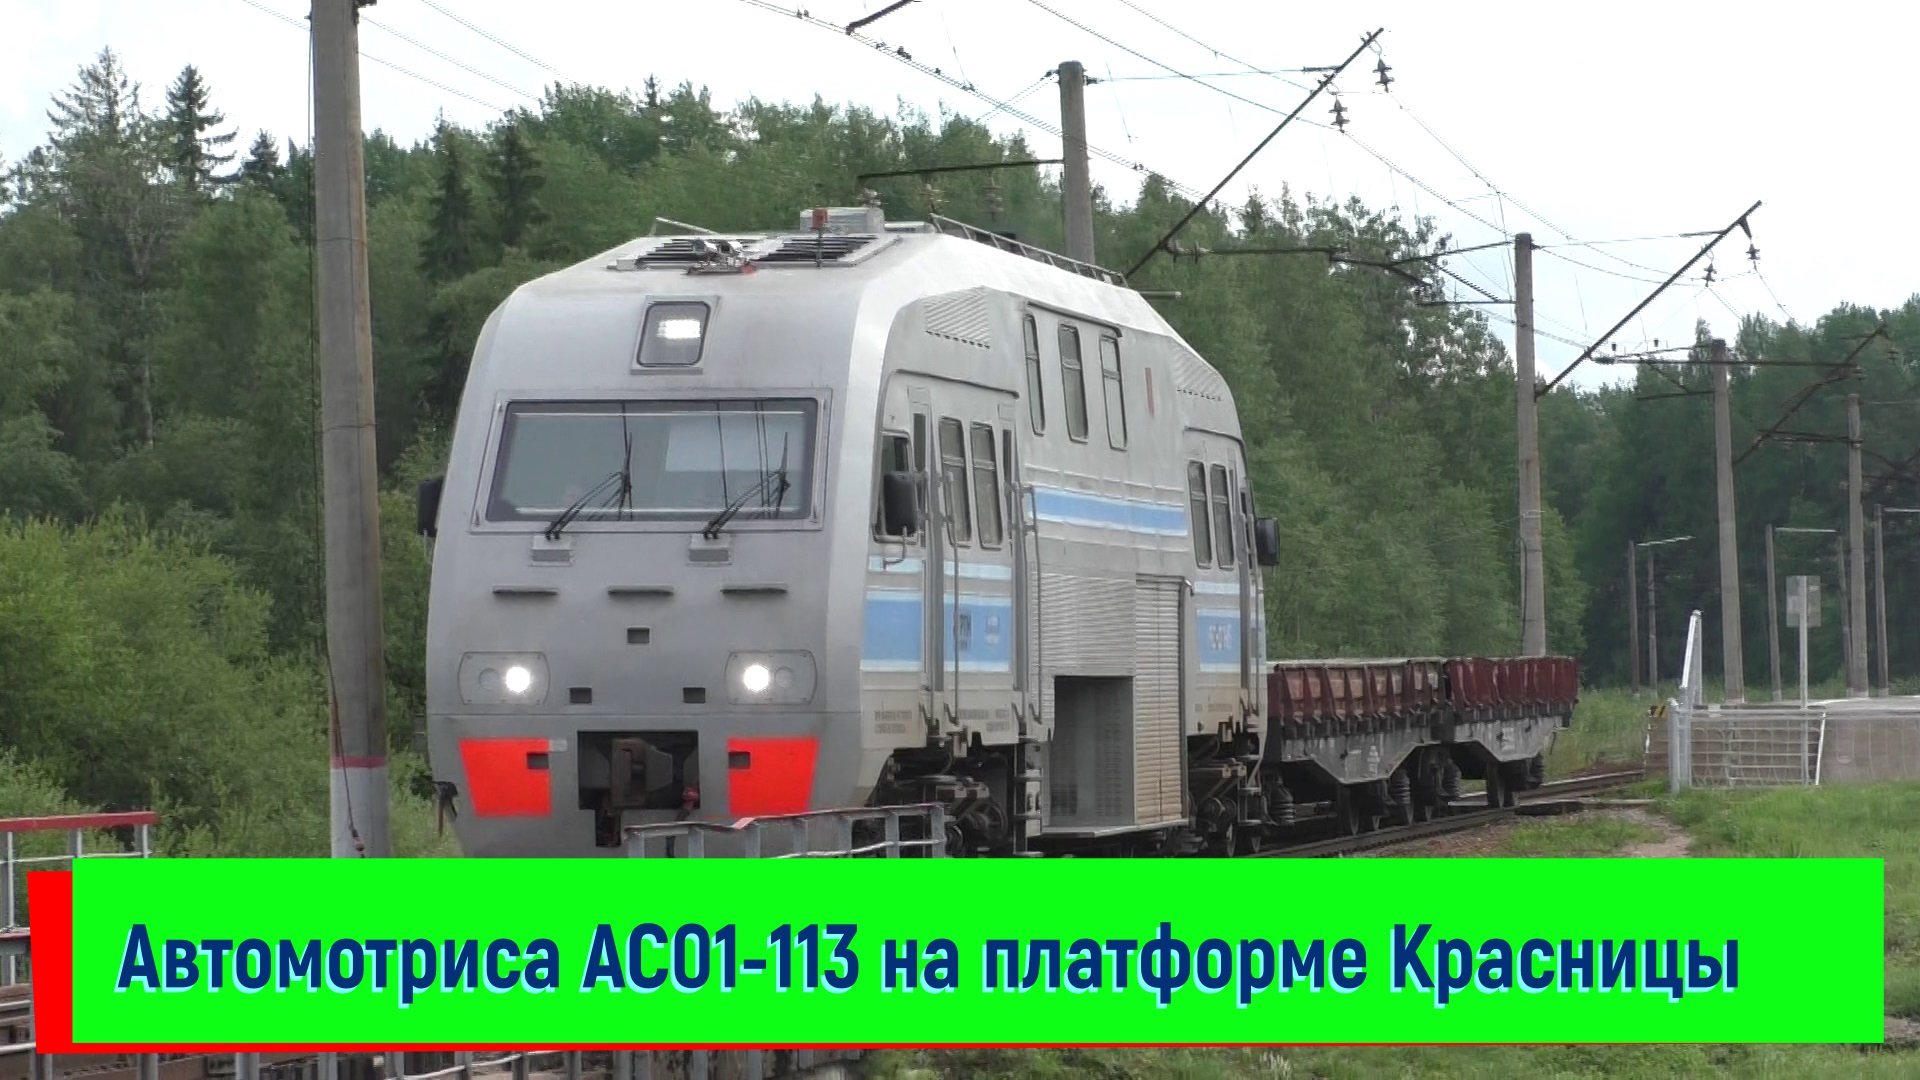 Автомотриса АС01-113 проследует платформу Красница | AS-113, Krasnitsa platform